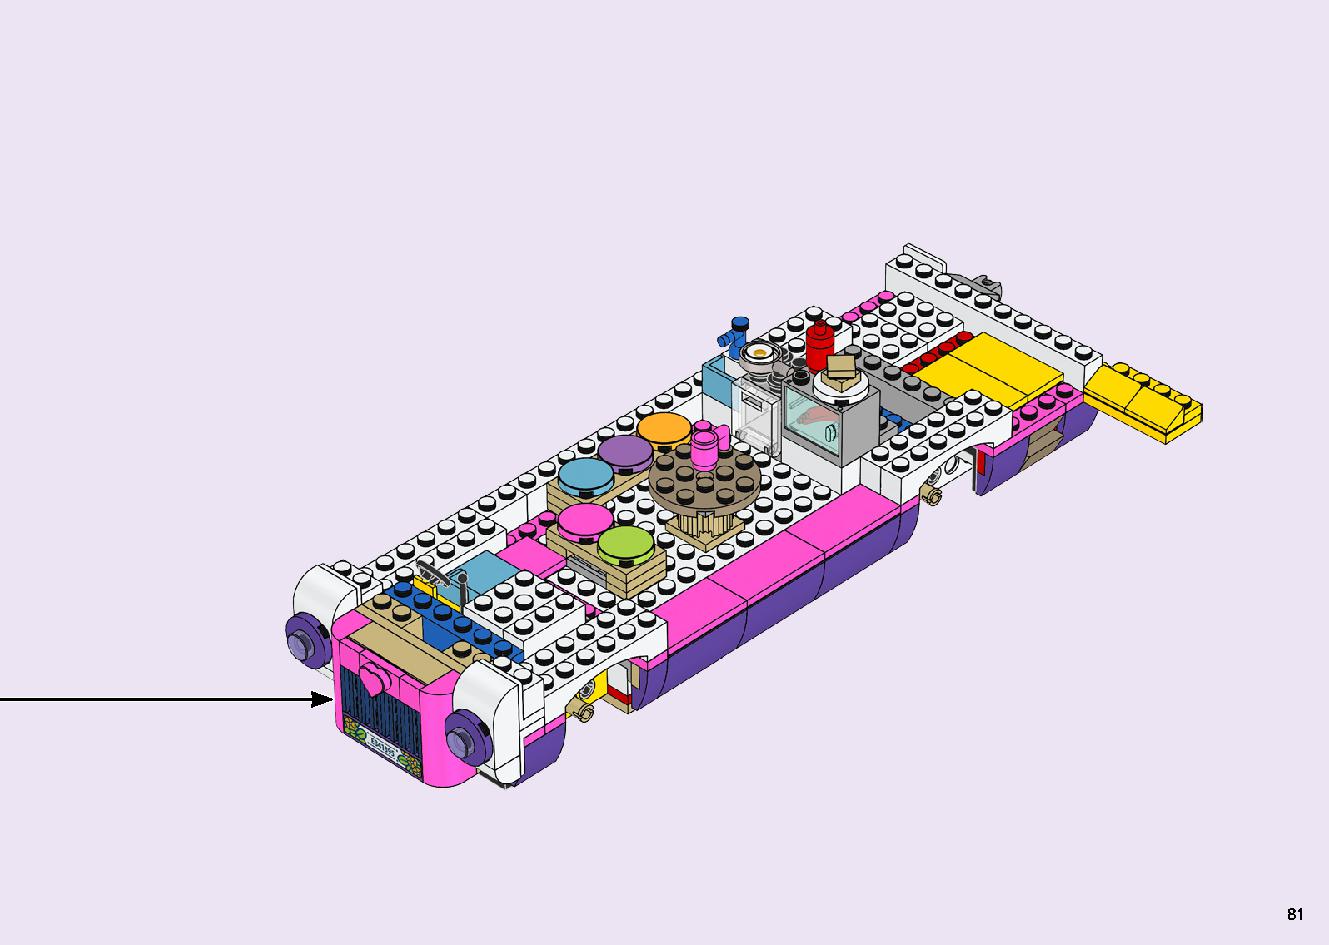 フレンズのうきうきハッピー・バス 41395 レゴの商品情報 レゴの説明書・組立方法 81 page